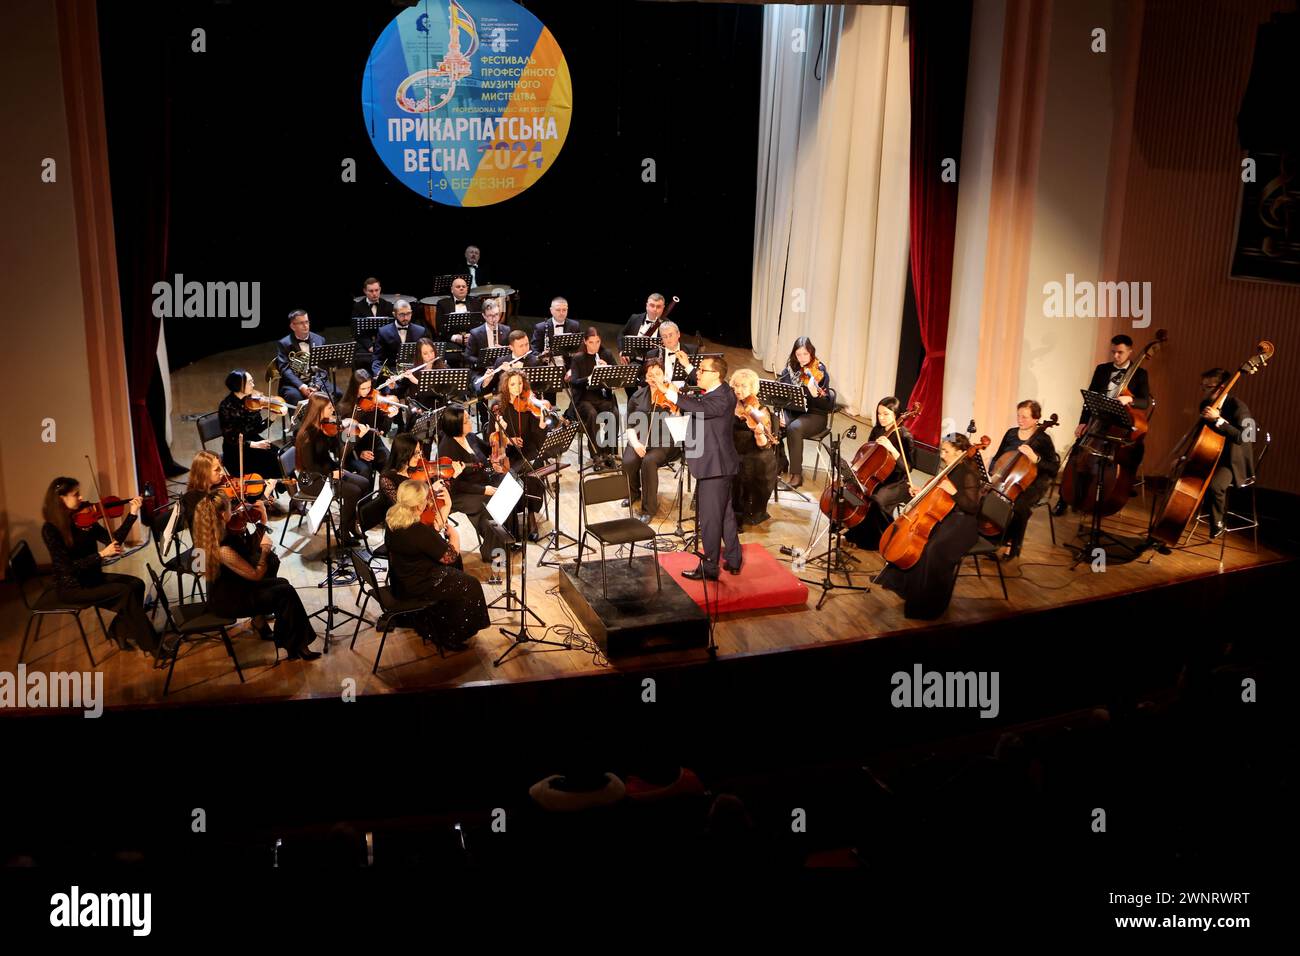 Nicht exklusiv: IWANO-FRANKIWSK, UKRAINE - 2. MÄRZ 2024 - Dirigent Roman Dzundza (C) leitet ein Orchester während der Prykarpattia Spring Festiva 2024 Stockfoto